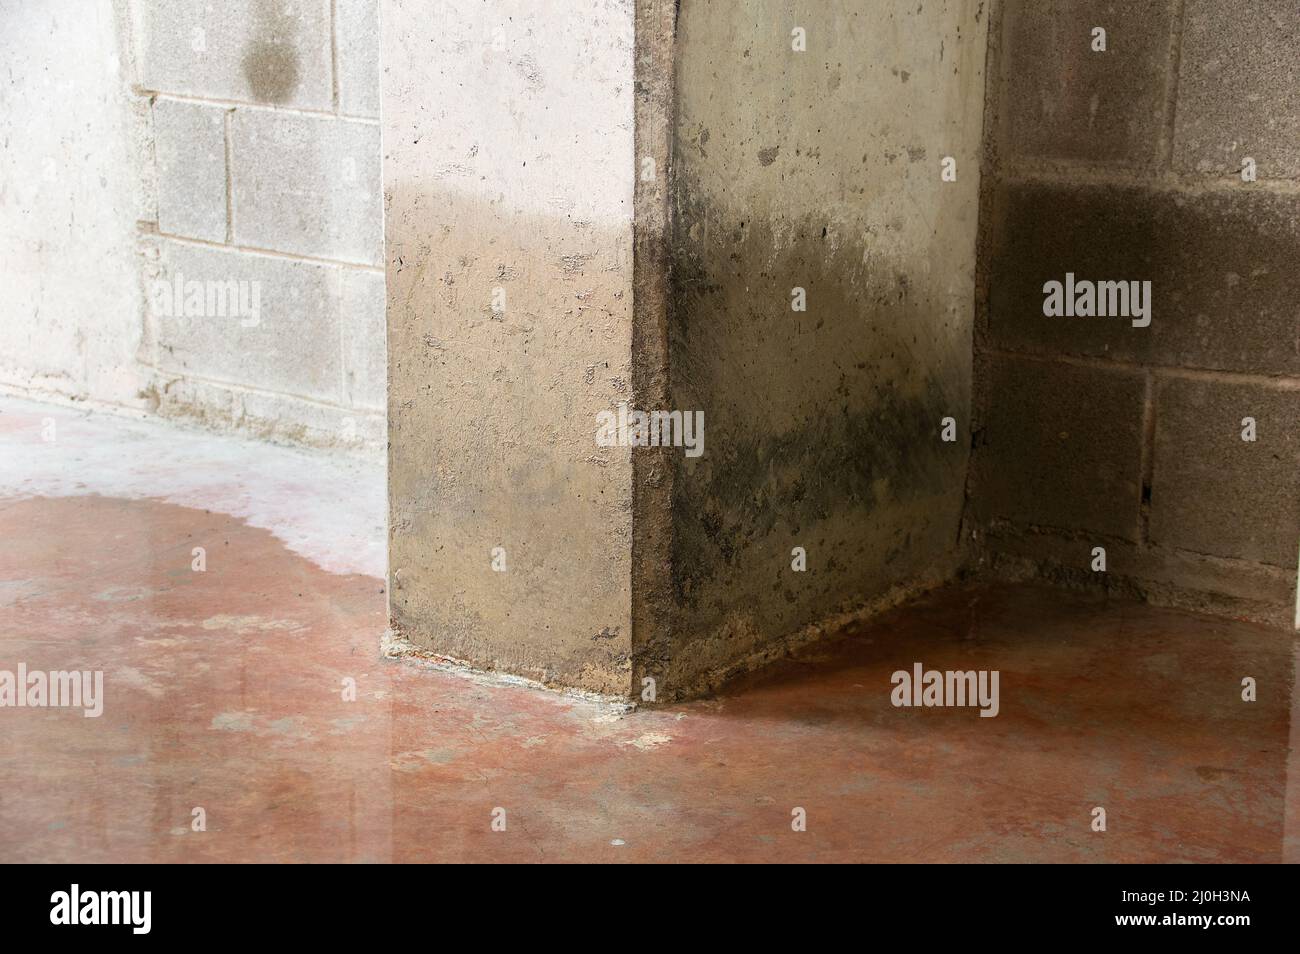 Daños a una columna de hormigón por el agua en el sótano Foto de stock